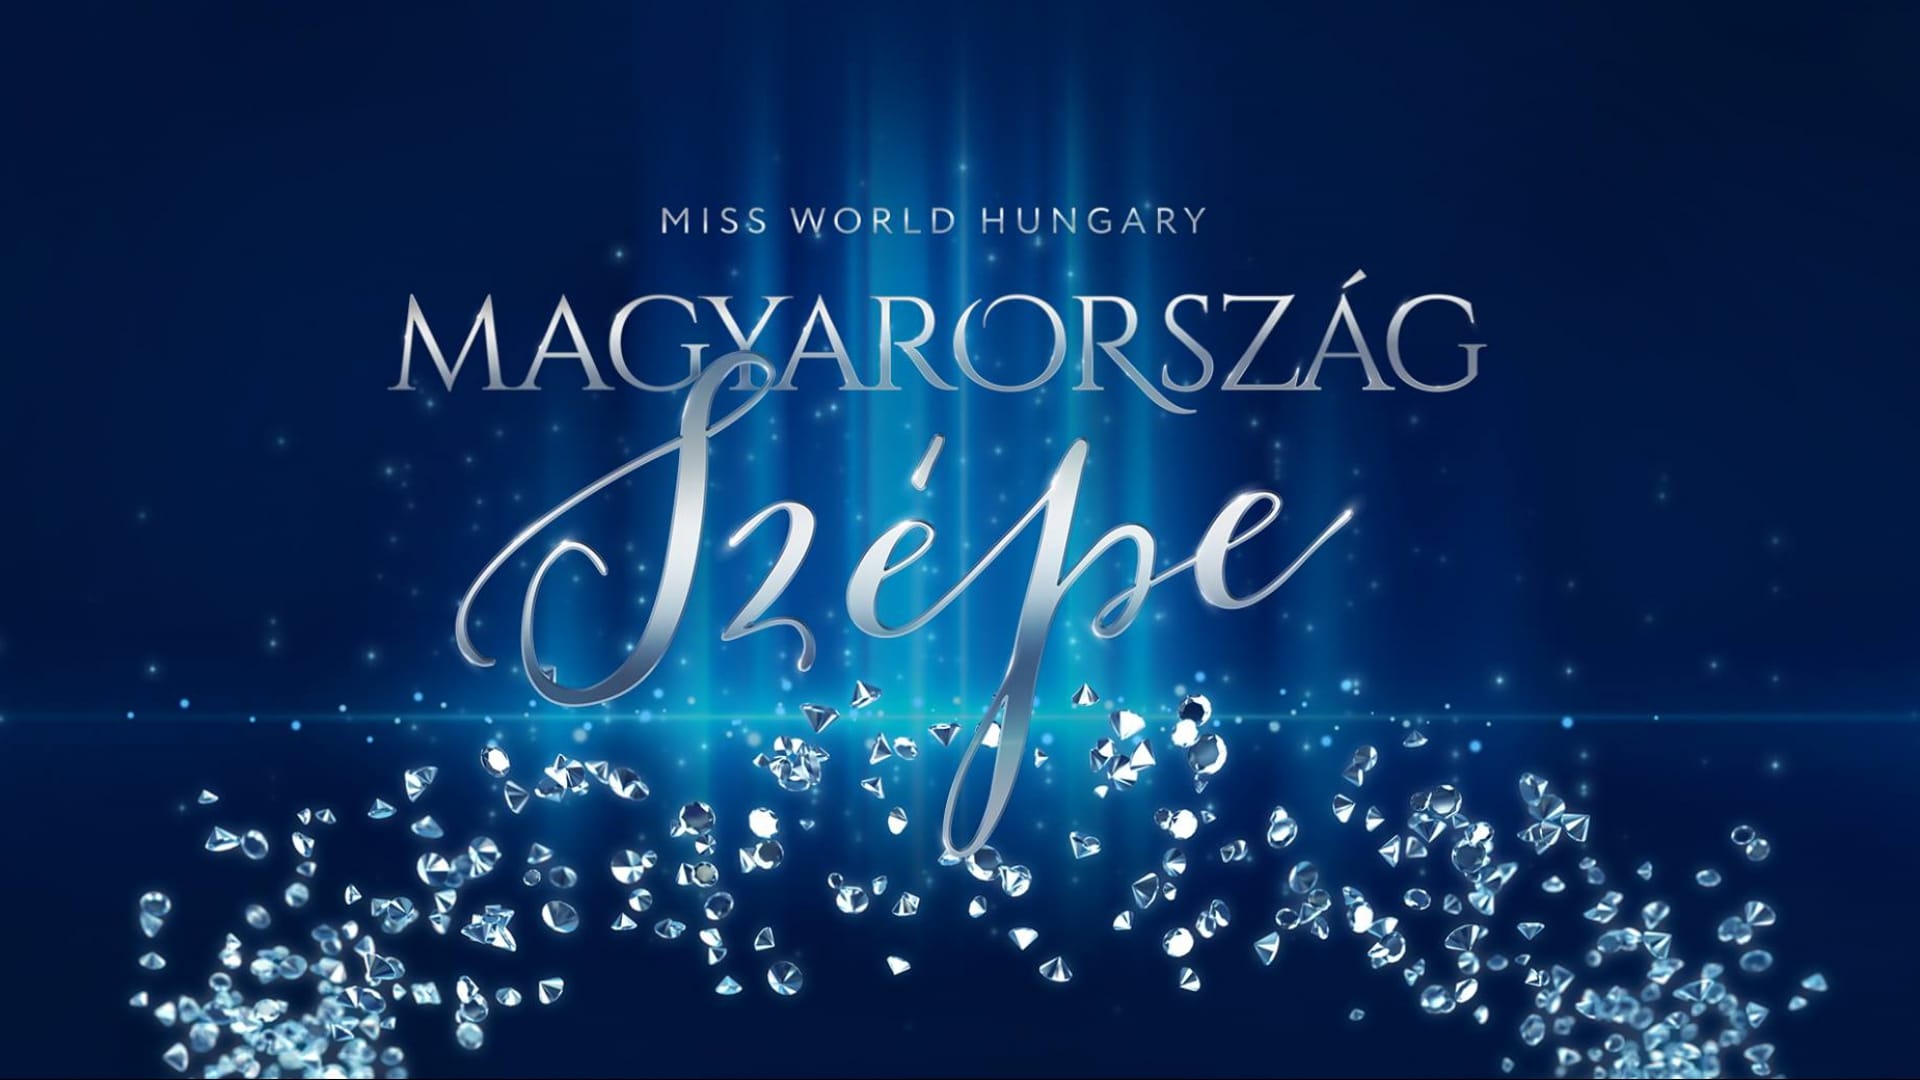 Vasárnap este kiderül, ki lesz Magyarország Szépe 2018-ban; a műsort Eurovíziós előadók produkciói is színesítik, ahol Cesár Sampson is fellép.